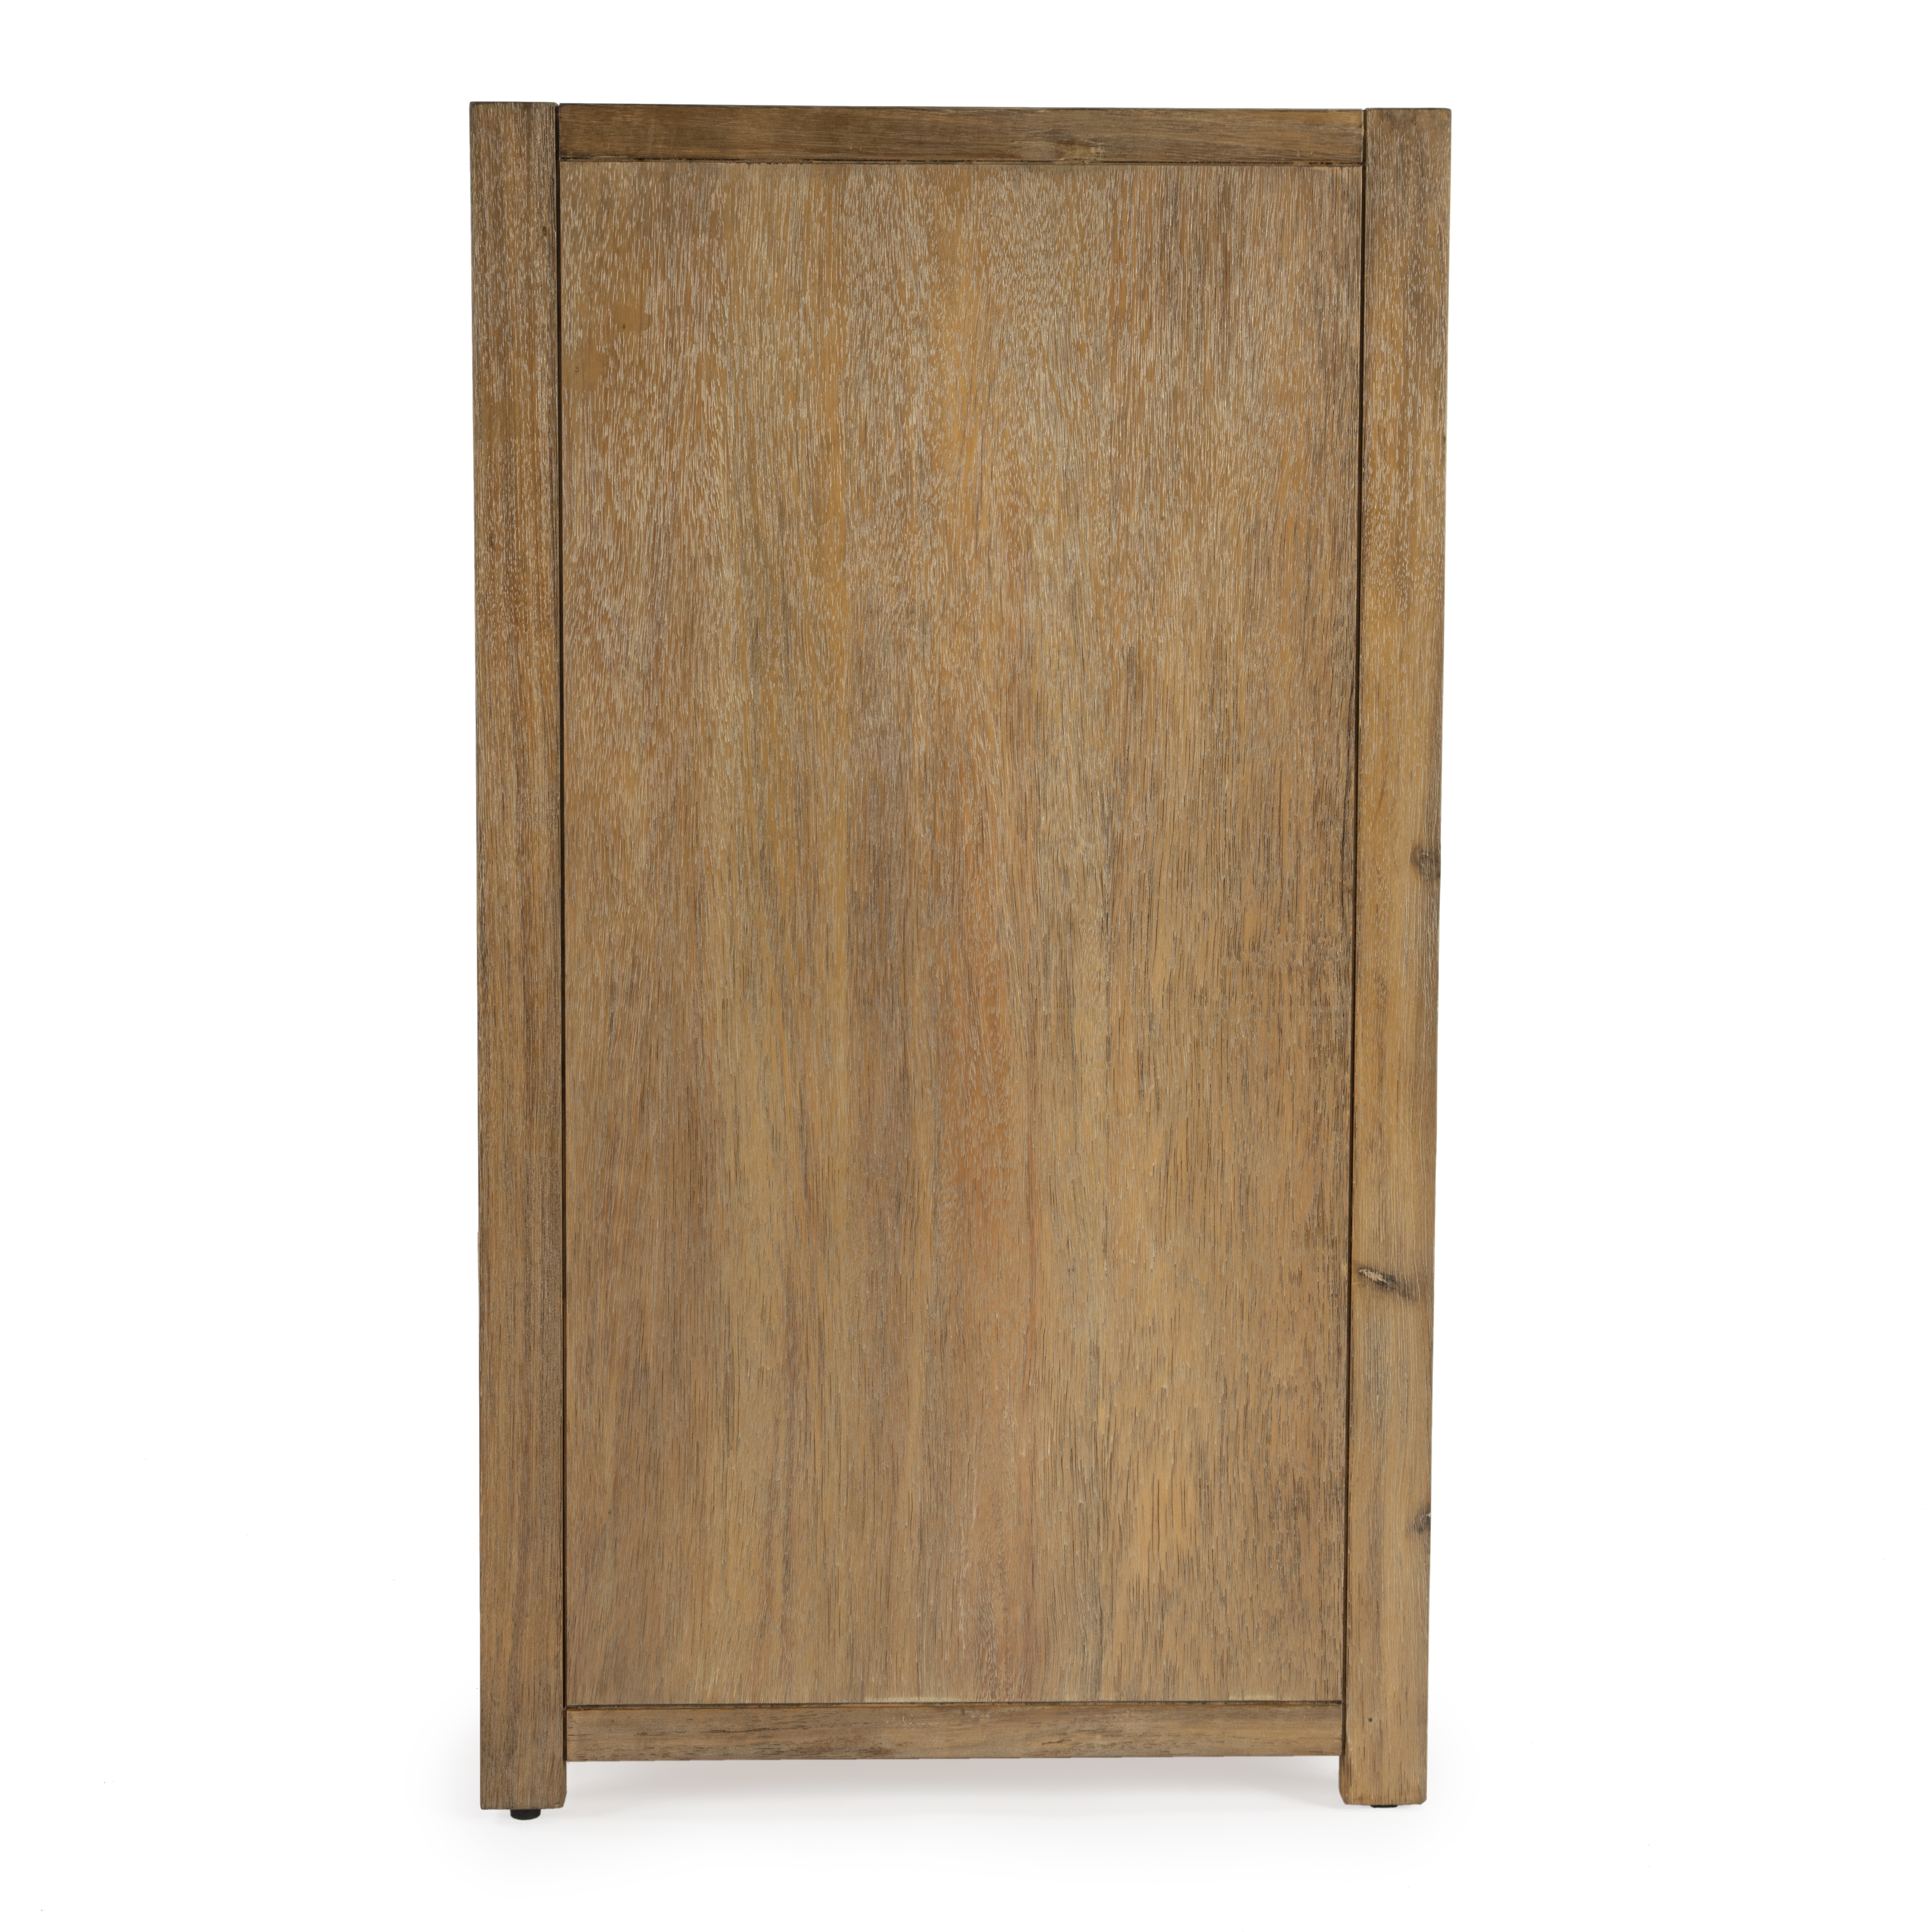 Lark Natural Wood Dresser - Image 2